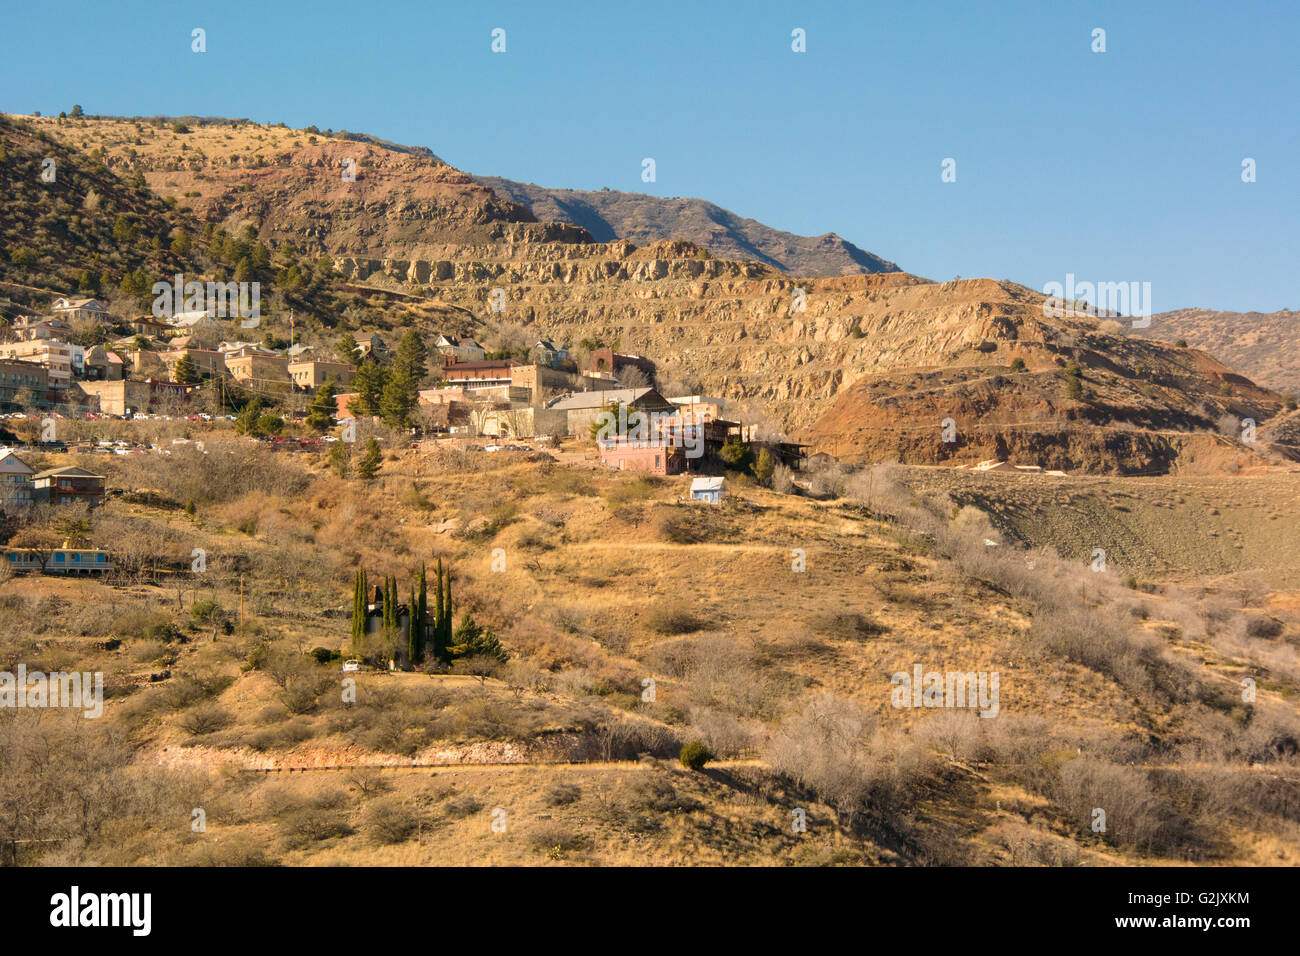 Girolamo, Arizona, Nord America. Rame storica città mineraria di recupero di data mining sulla destra Foto Stock